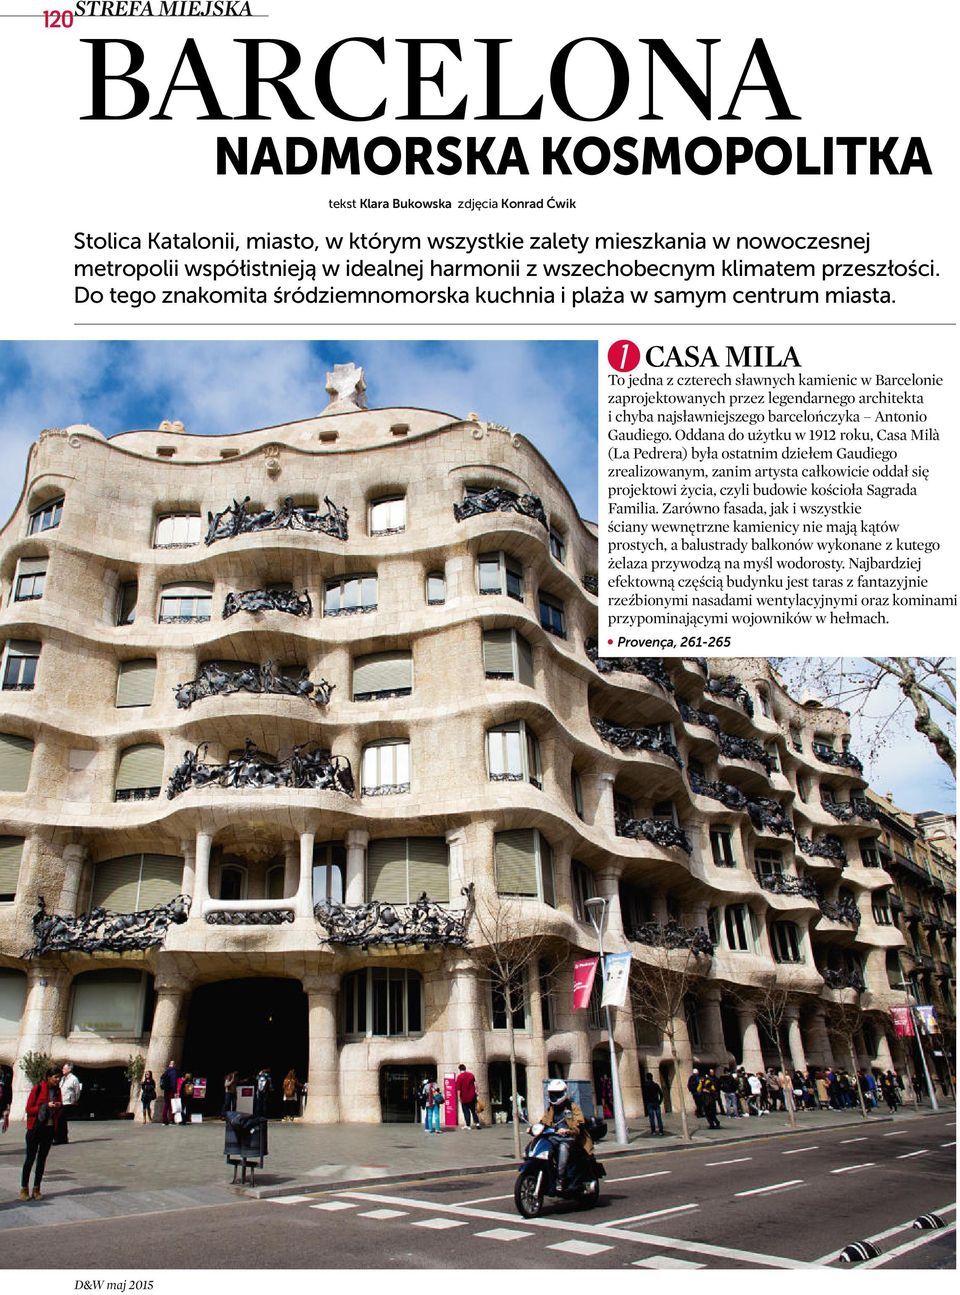 1 CASA MILA To jedna z czterech sławnych kamienic w Barcelonie zaprojektowanych przez legendarnego architekta i chyba najsławniejszego barcelończyka Antonio Gaudiego.